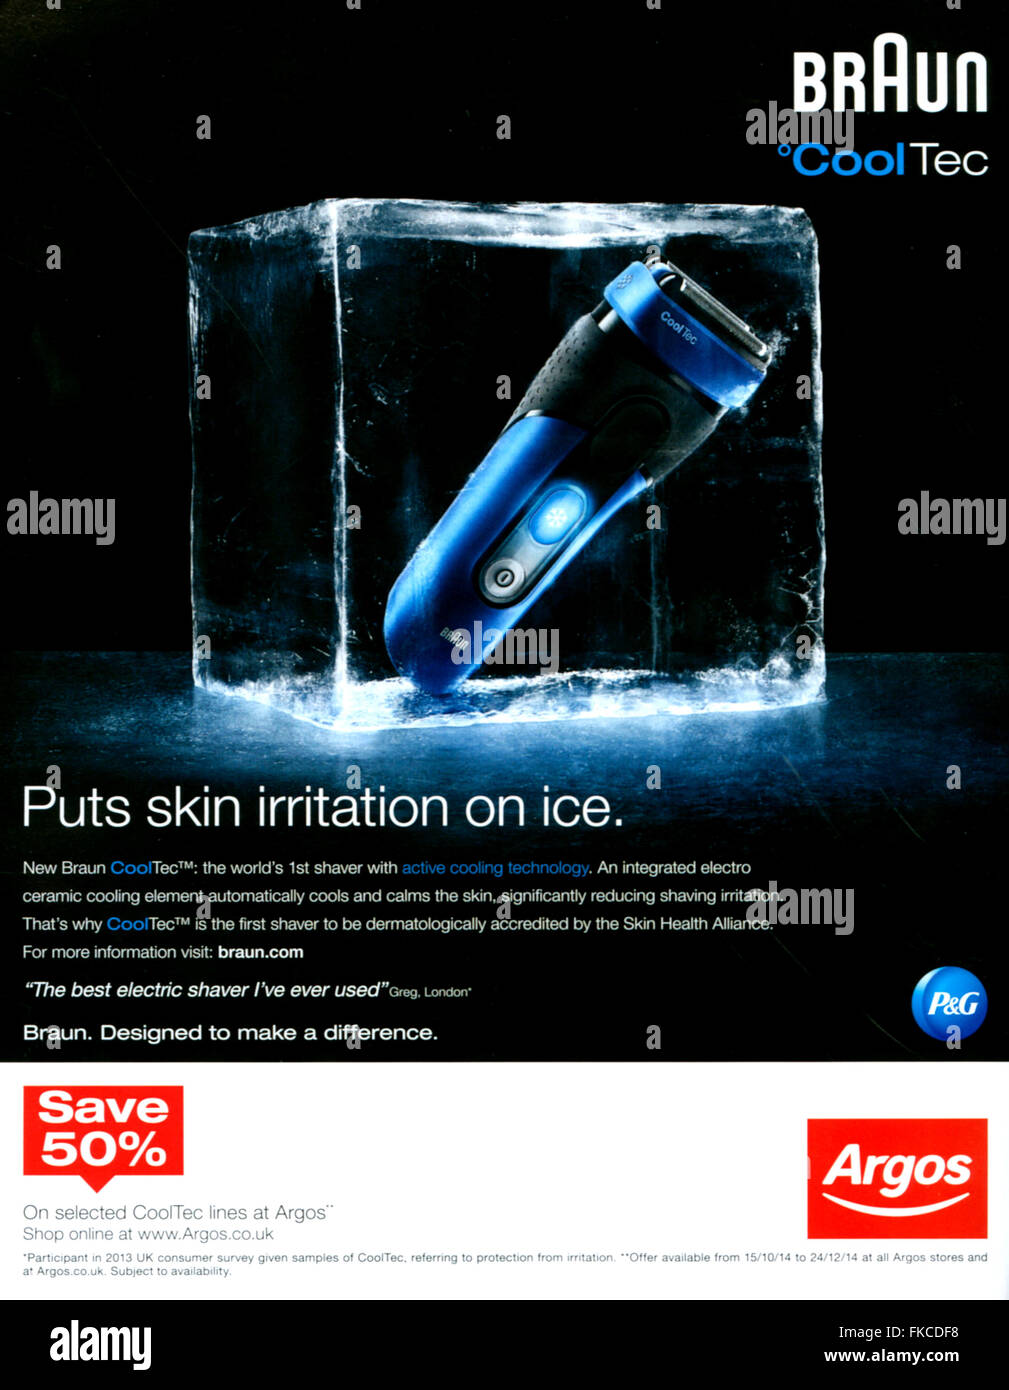 2010s UK Braun Magazine Advert Stock Photo